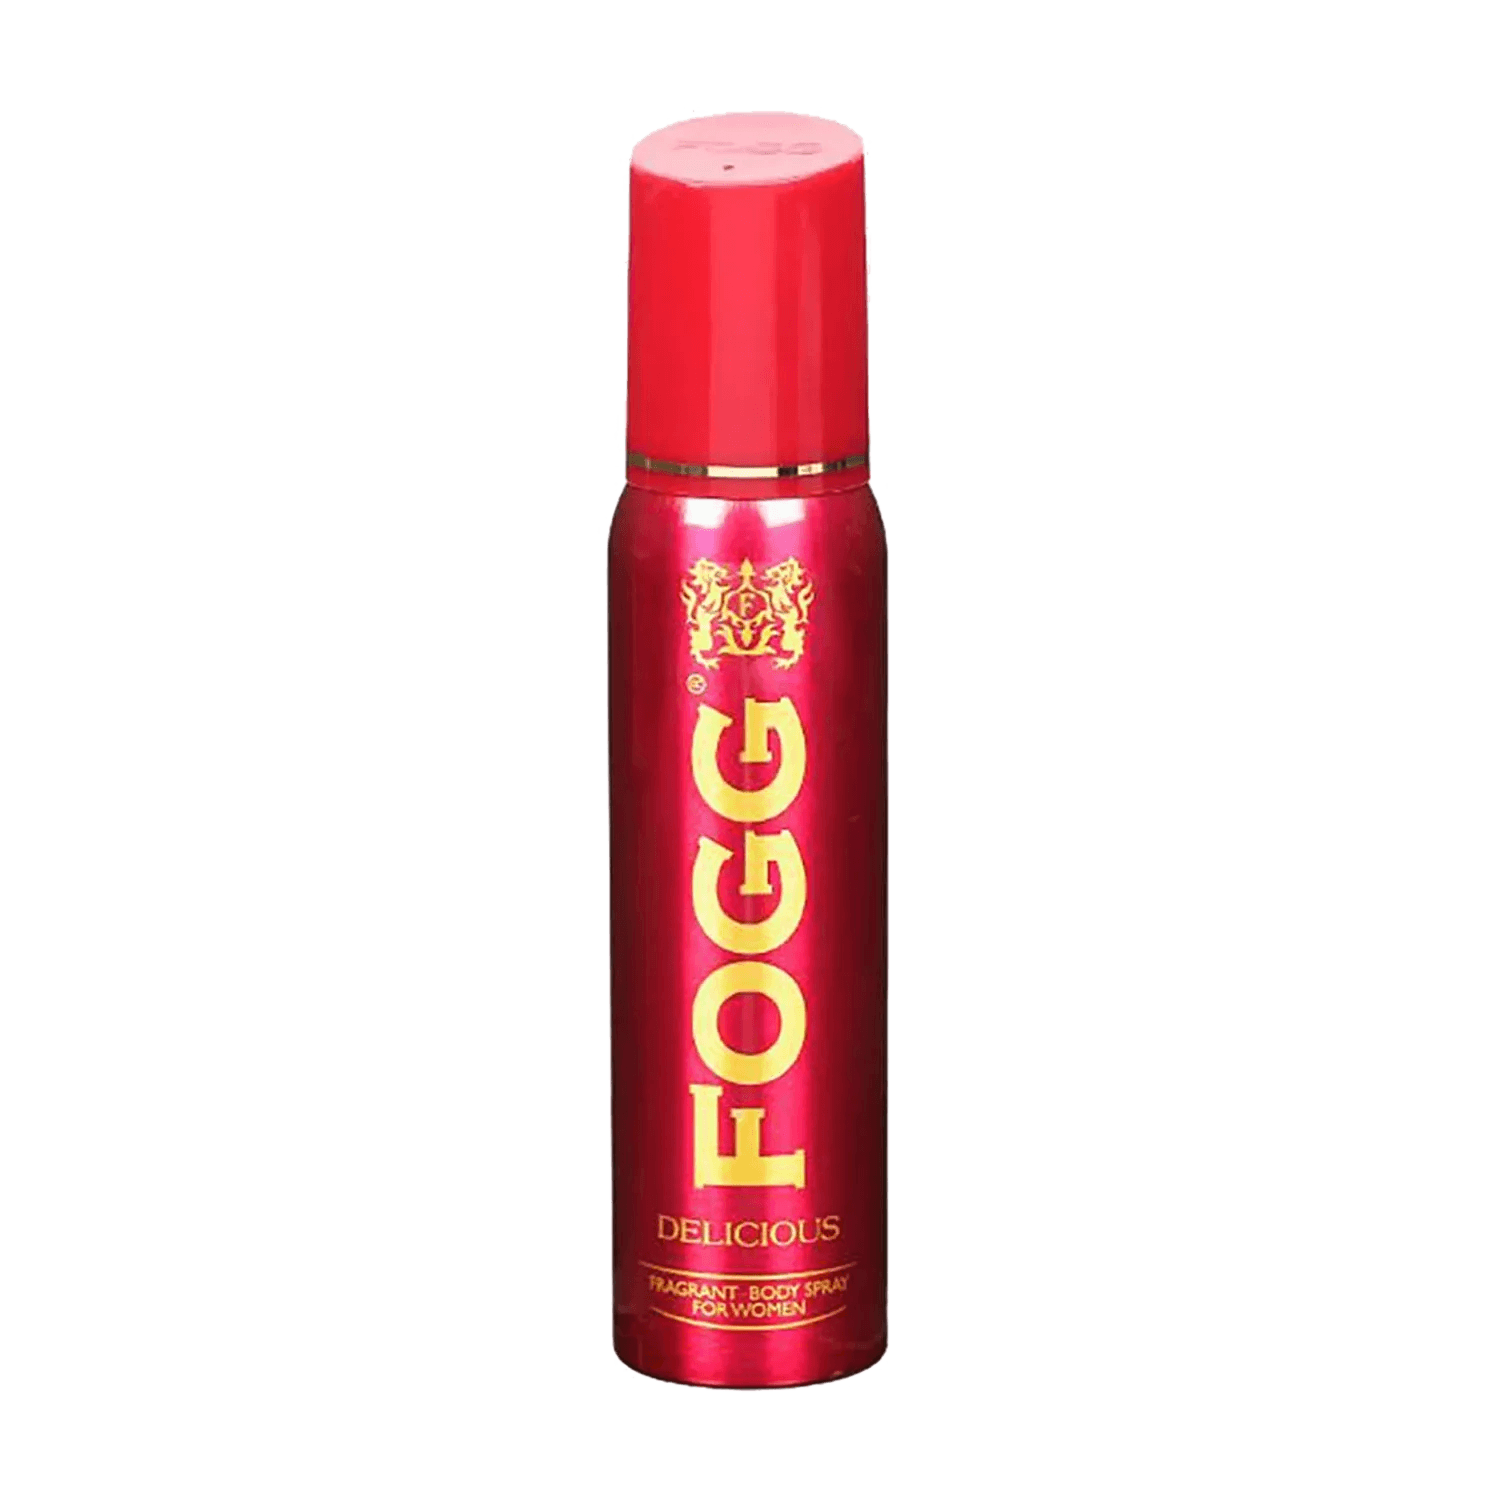 FOGG | FOGG Delicious Fragrance Body Spray For Women (150ml)